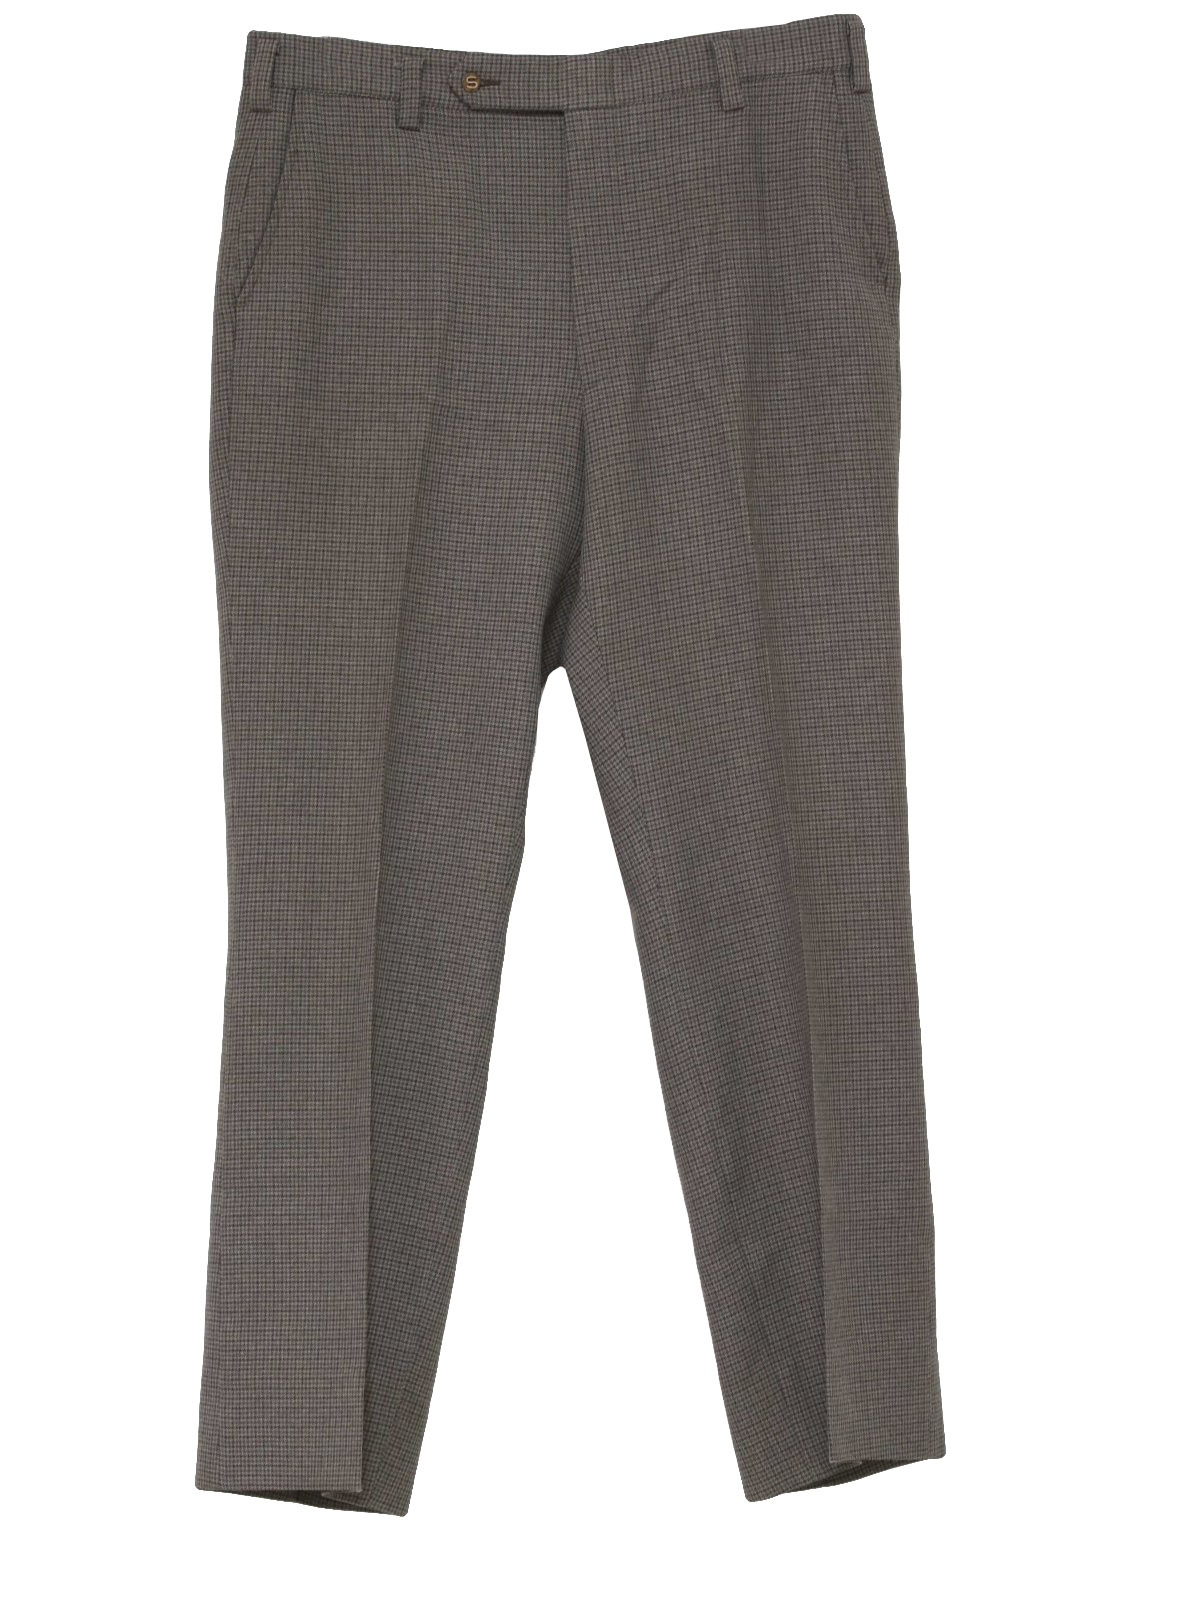 70s Pants (Sansabelt): 70s -Sansabelt- Mens heather grays, tiny woven ...